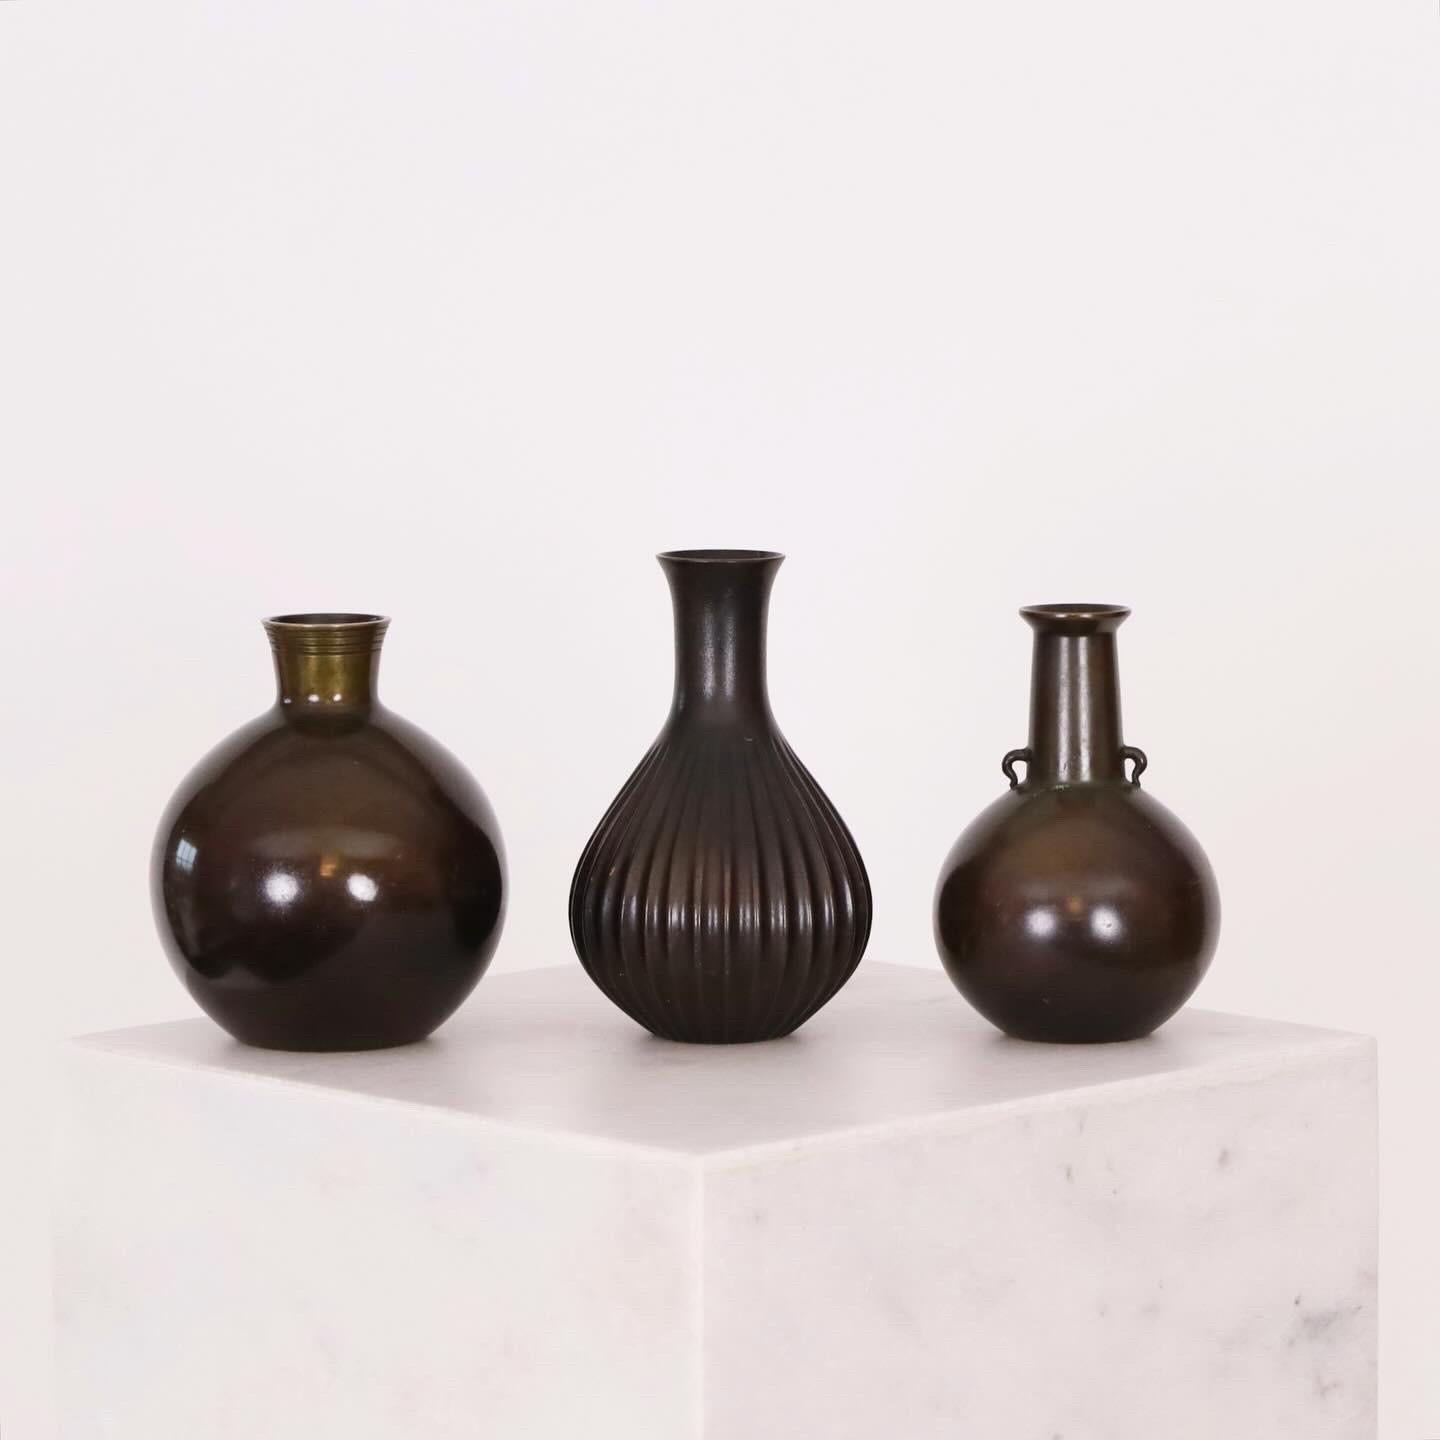 Collection de petits vases en bronze conçus par Just Andersen dans les années 1920. Un véritable témoignage des compétences exceptionnelles d'Andersen et un ajout intemporel à tout bel espace.
 
* Trio de petits vases en bronze en forme de goutte